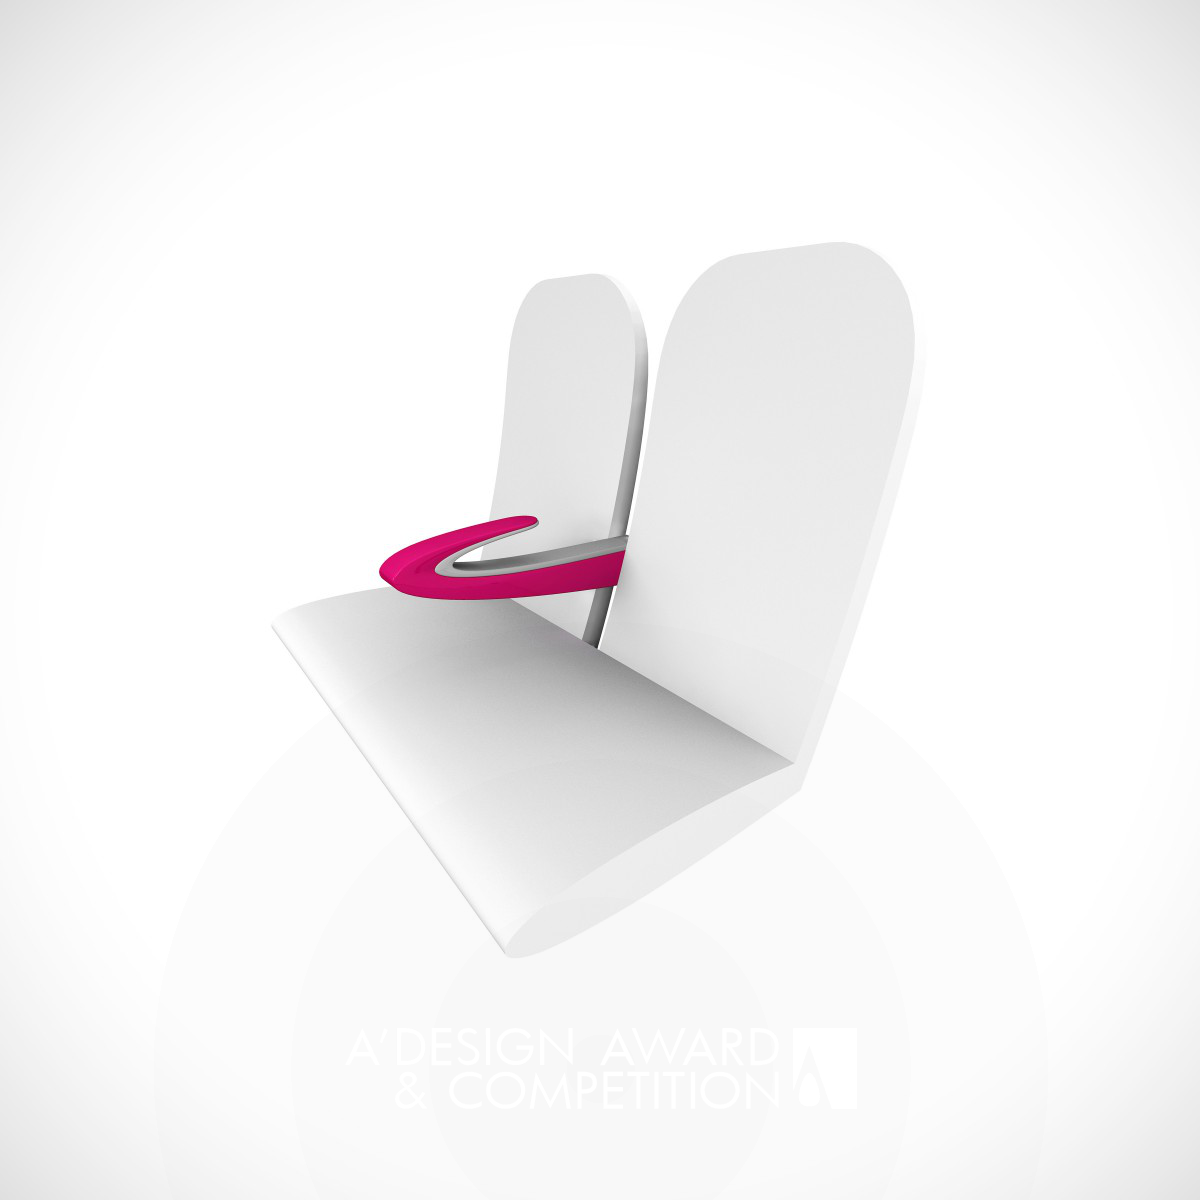 Paperclip Armrest Armrest for high-density seating by James Lee